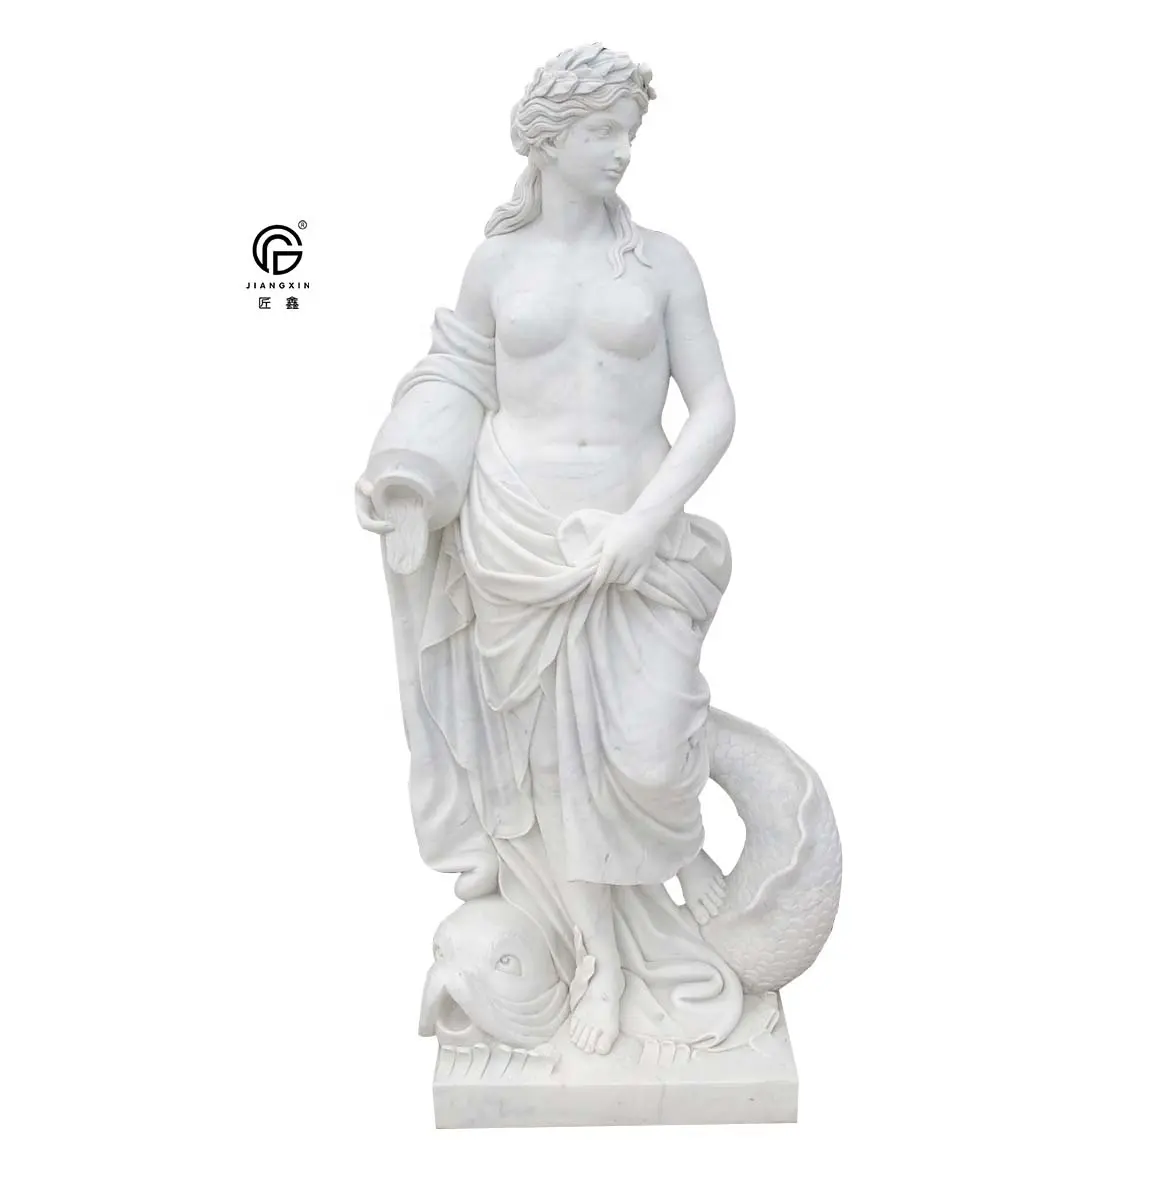 تمثال من الرخام الطبيعي, تمثال من الرخام الطبيعي منحوت باليد صائد الله تمثال النحت